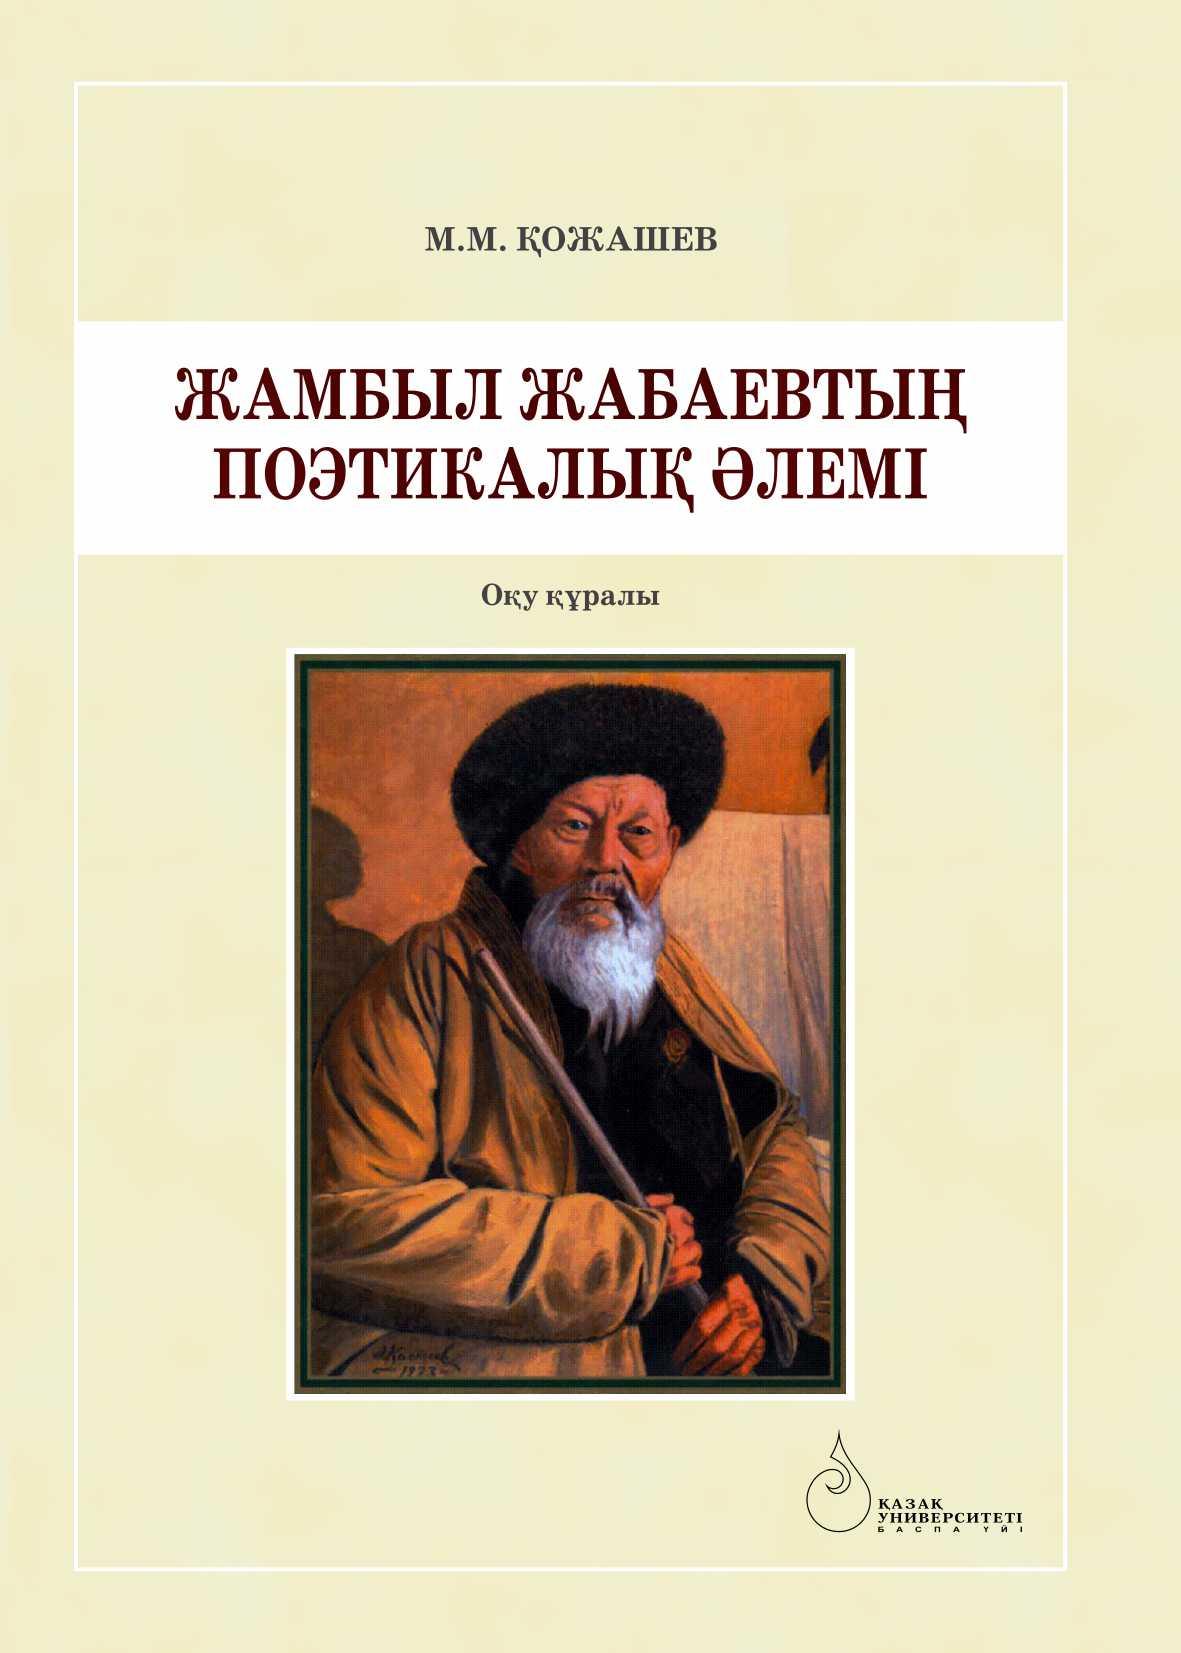 Жамбыл Жабаевтың поэтикалық әлемі: оқу құралы – 216 б.